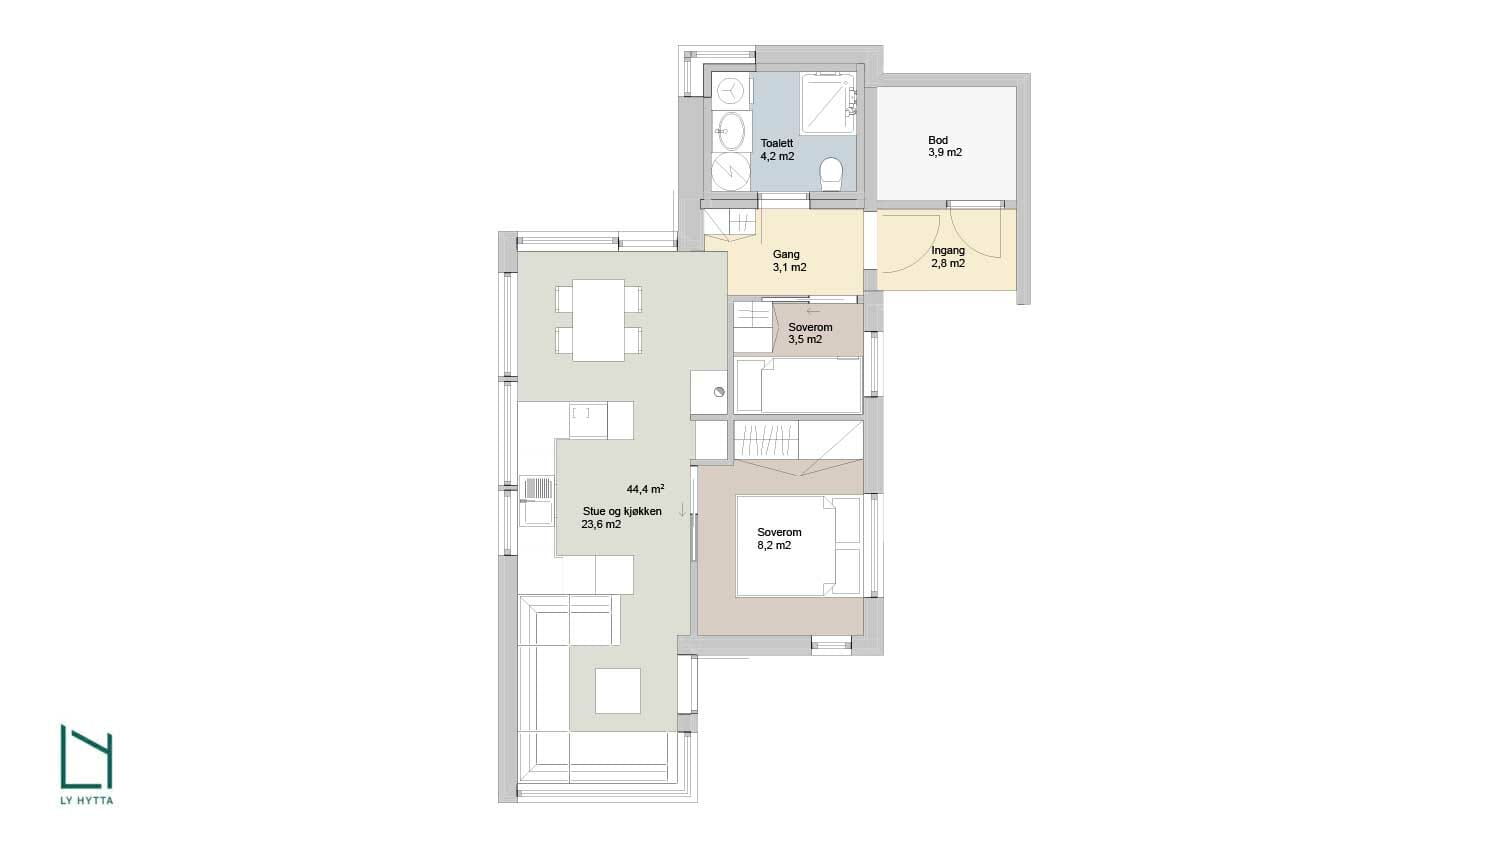 Plantegning av LY Hyttas prosjekterte hyttemodell Fri 4 med bod, inngang, gang, toalett, to soverom og stue og kjøkken. Illustrasjon.